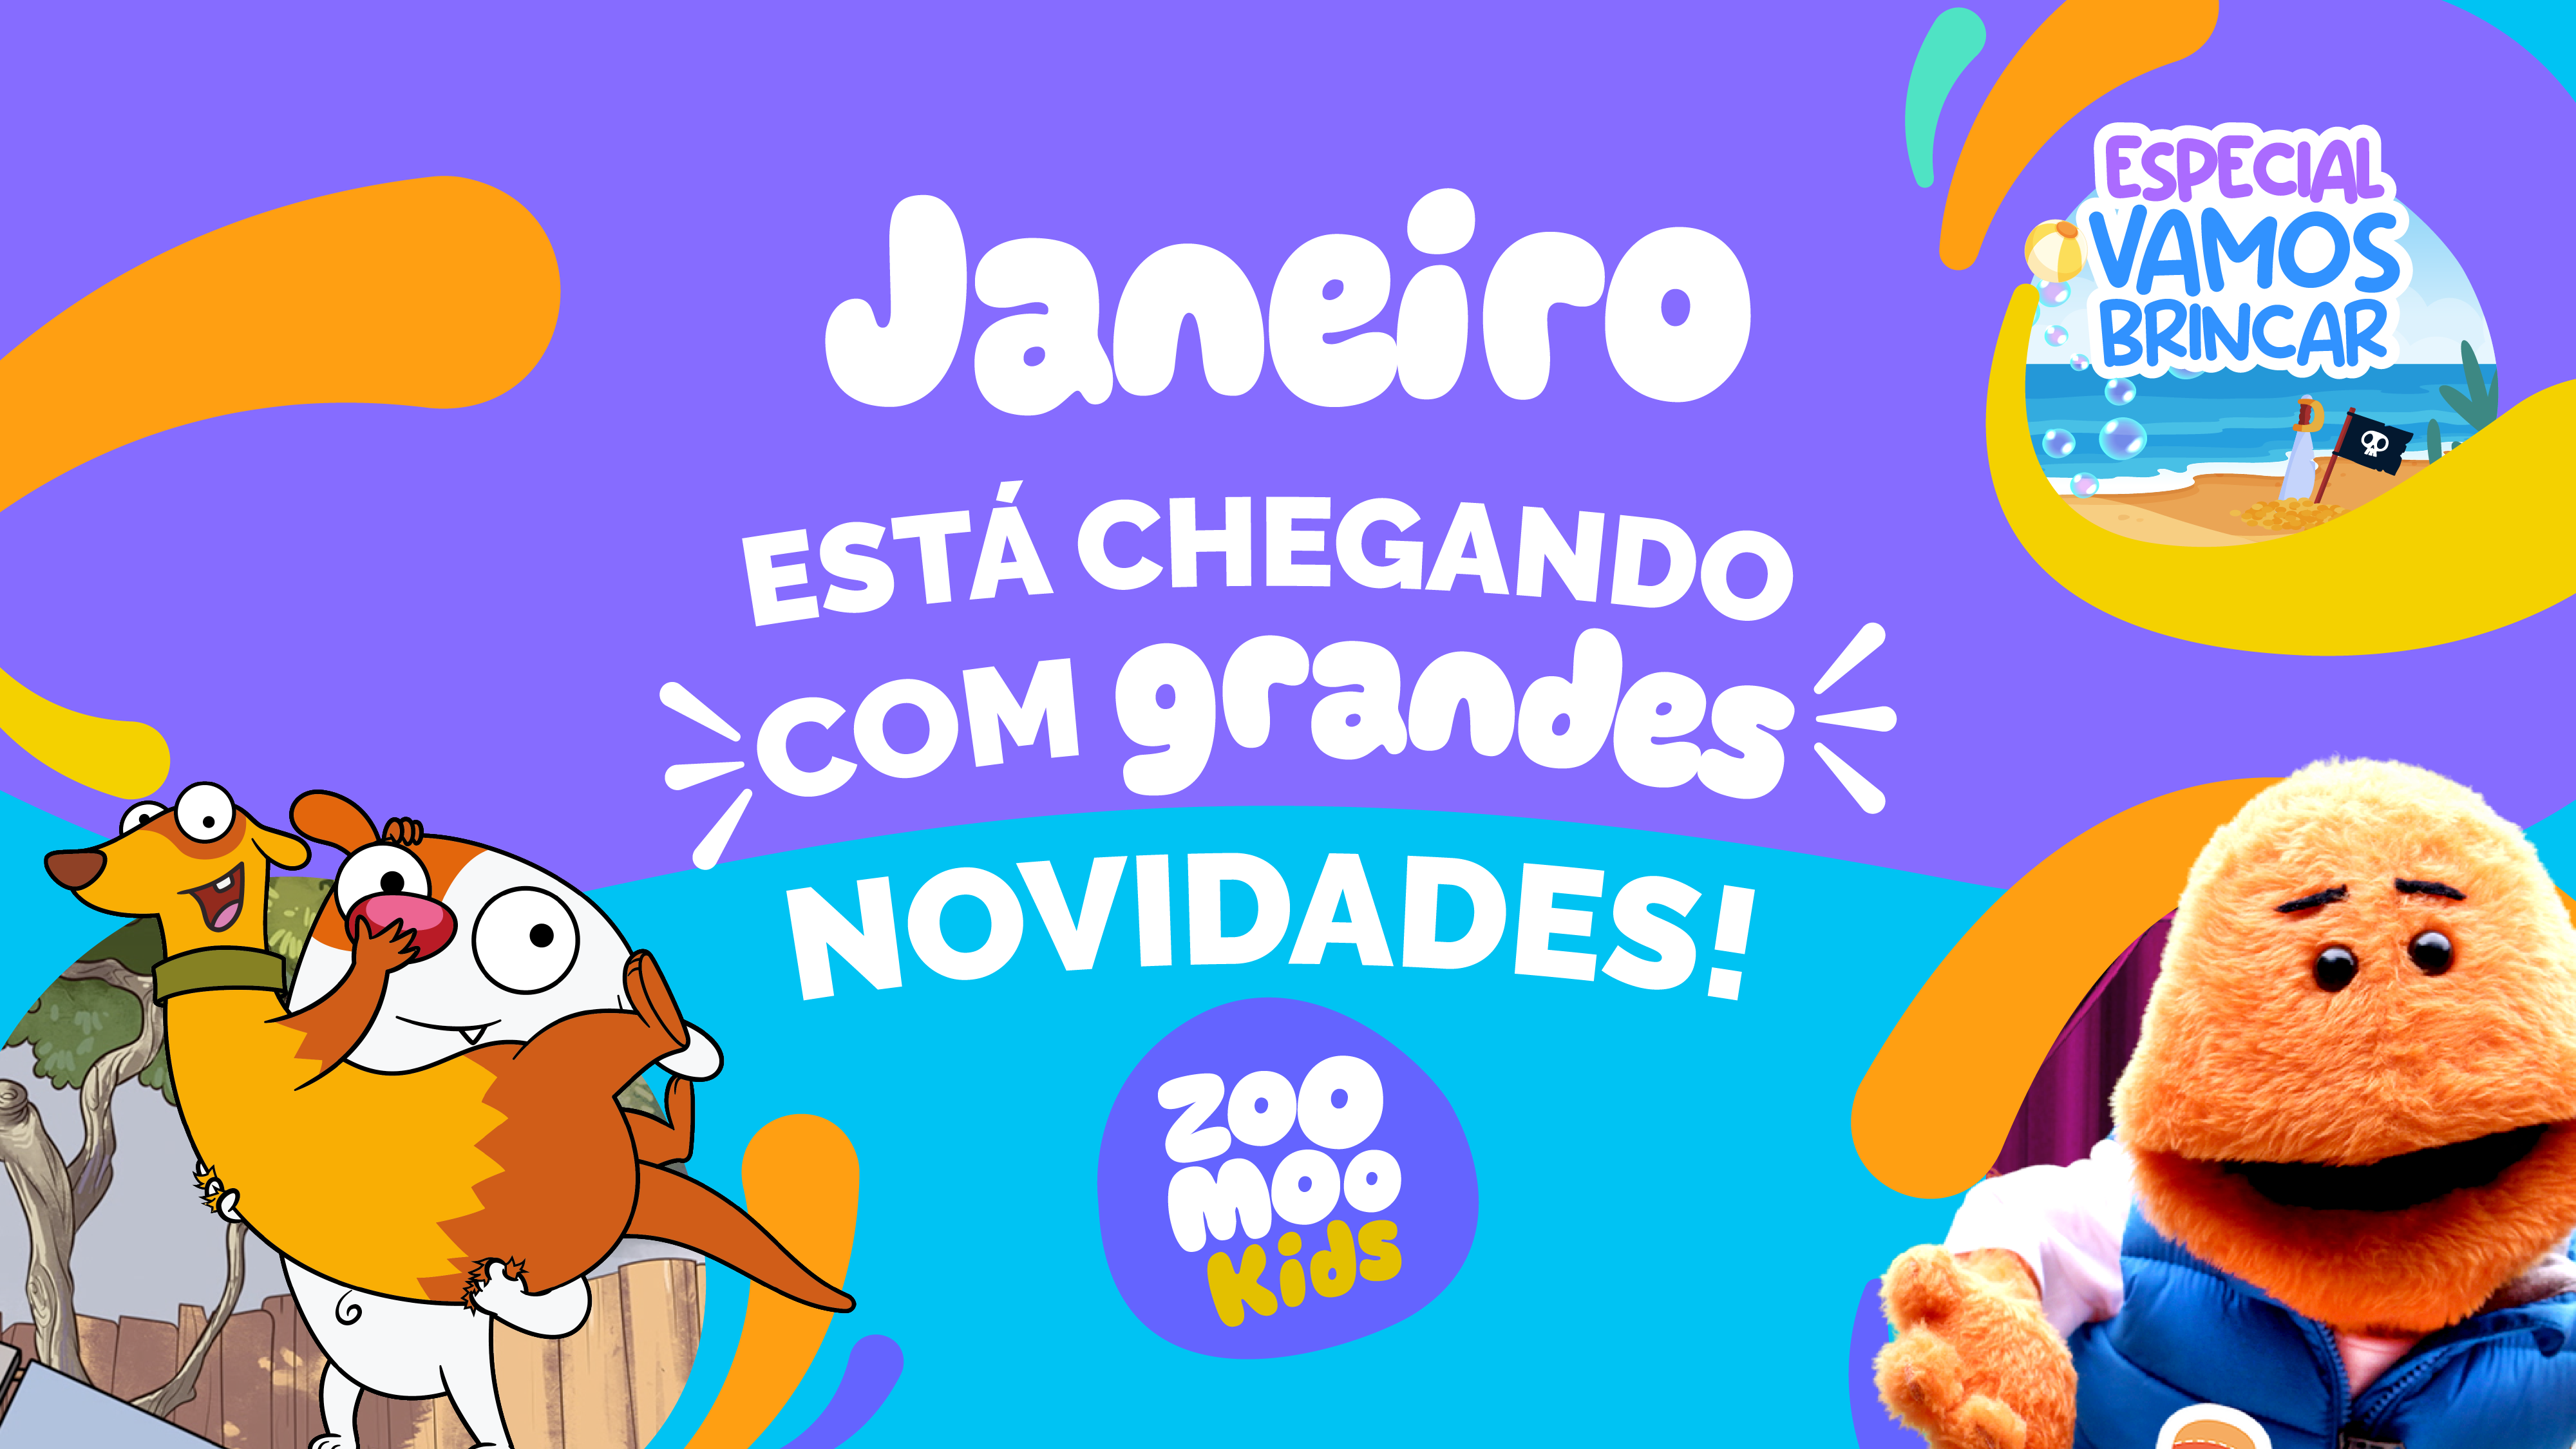 Canal ZooMoo Kids fecha contrato épico com o fenômeno Gato Galactico - EP  GRUPO